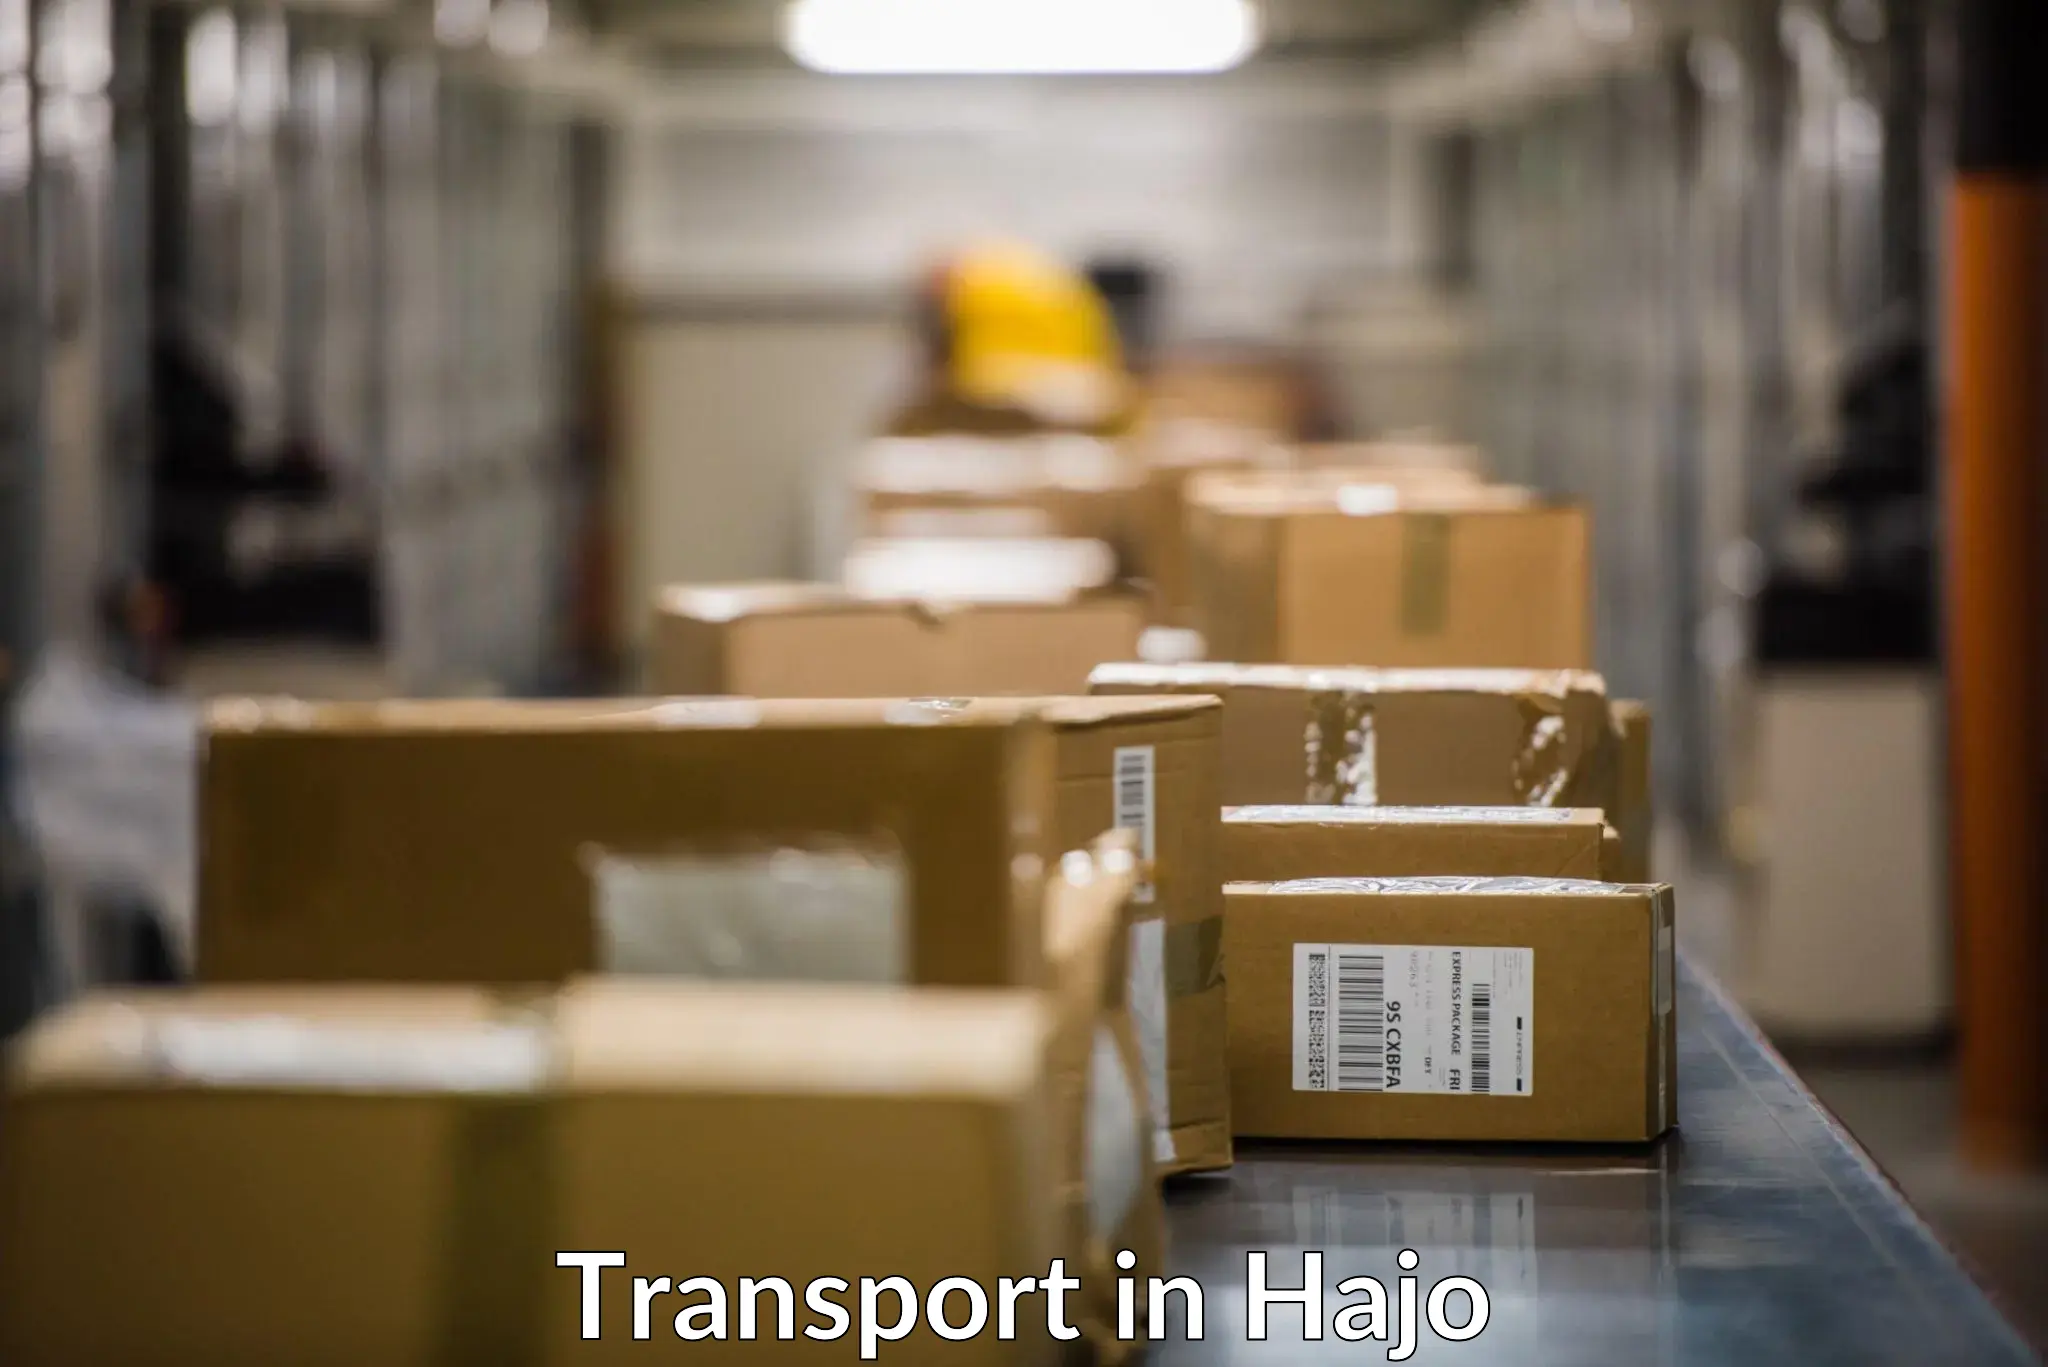 Online transport in Hajo